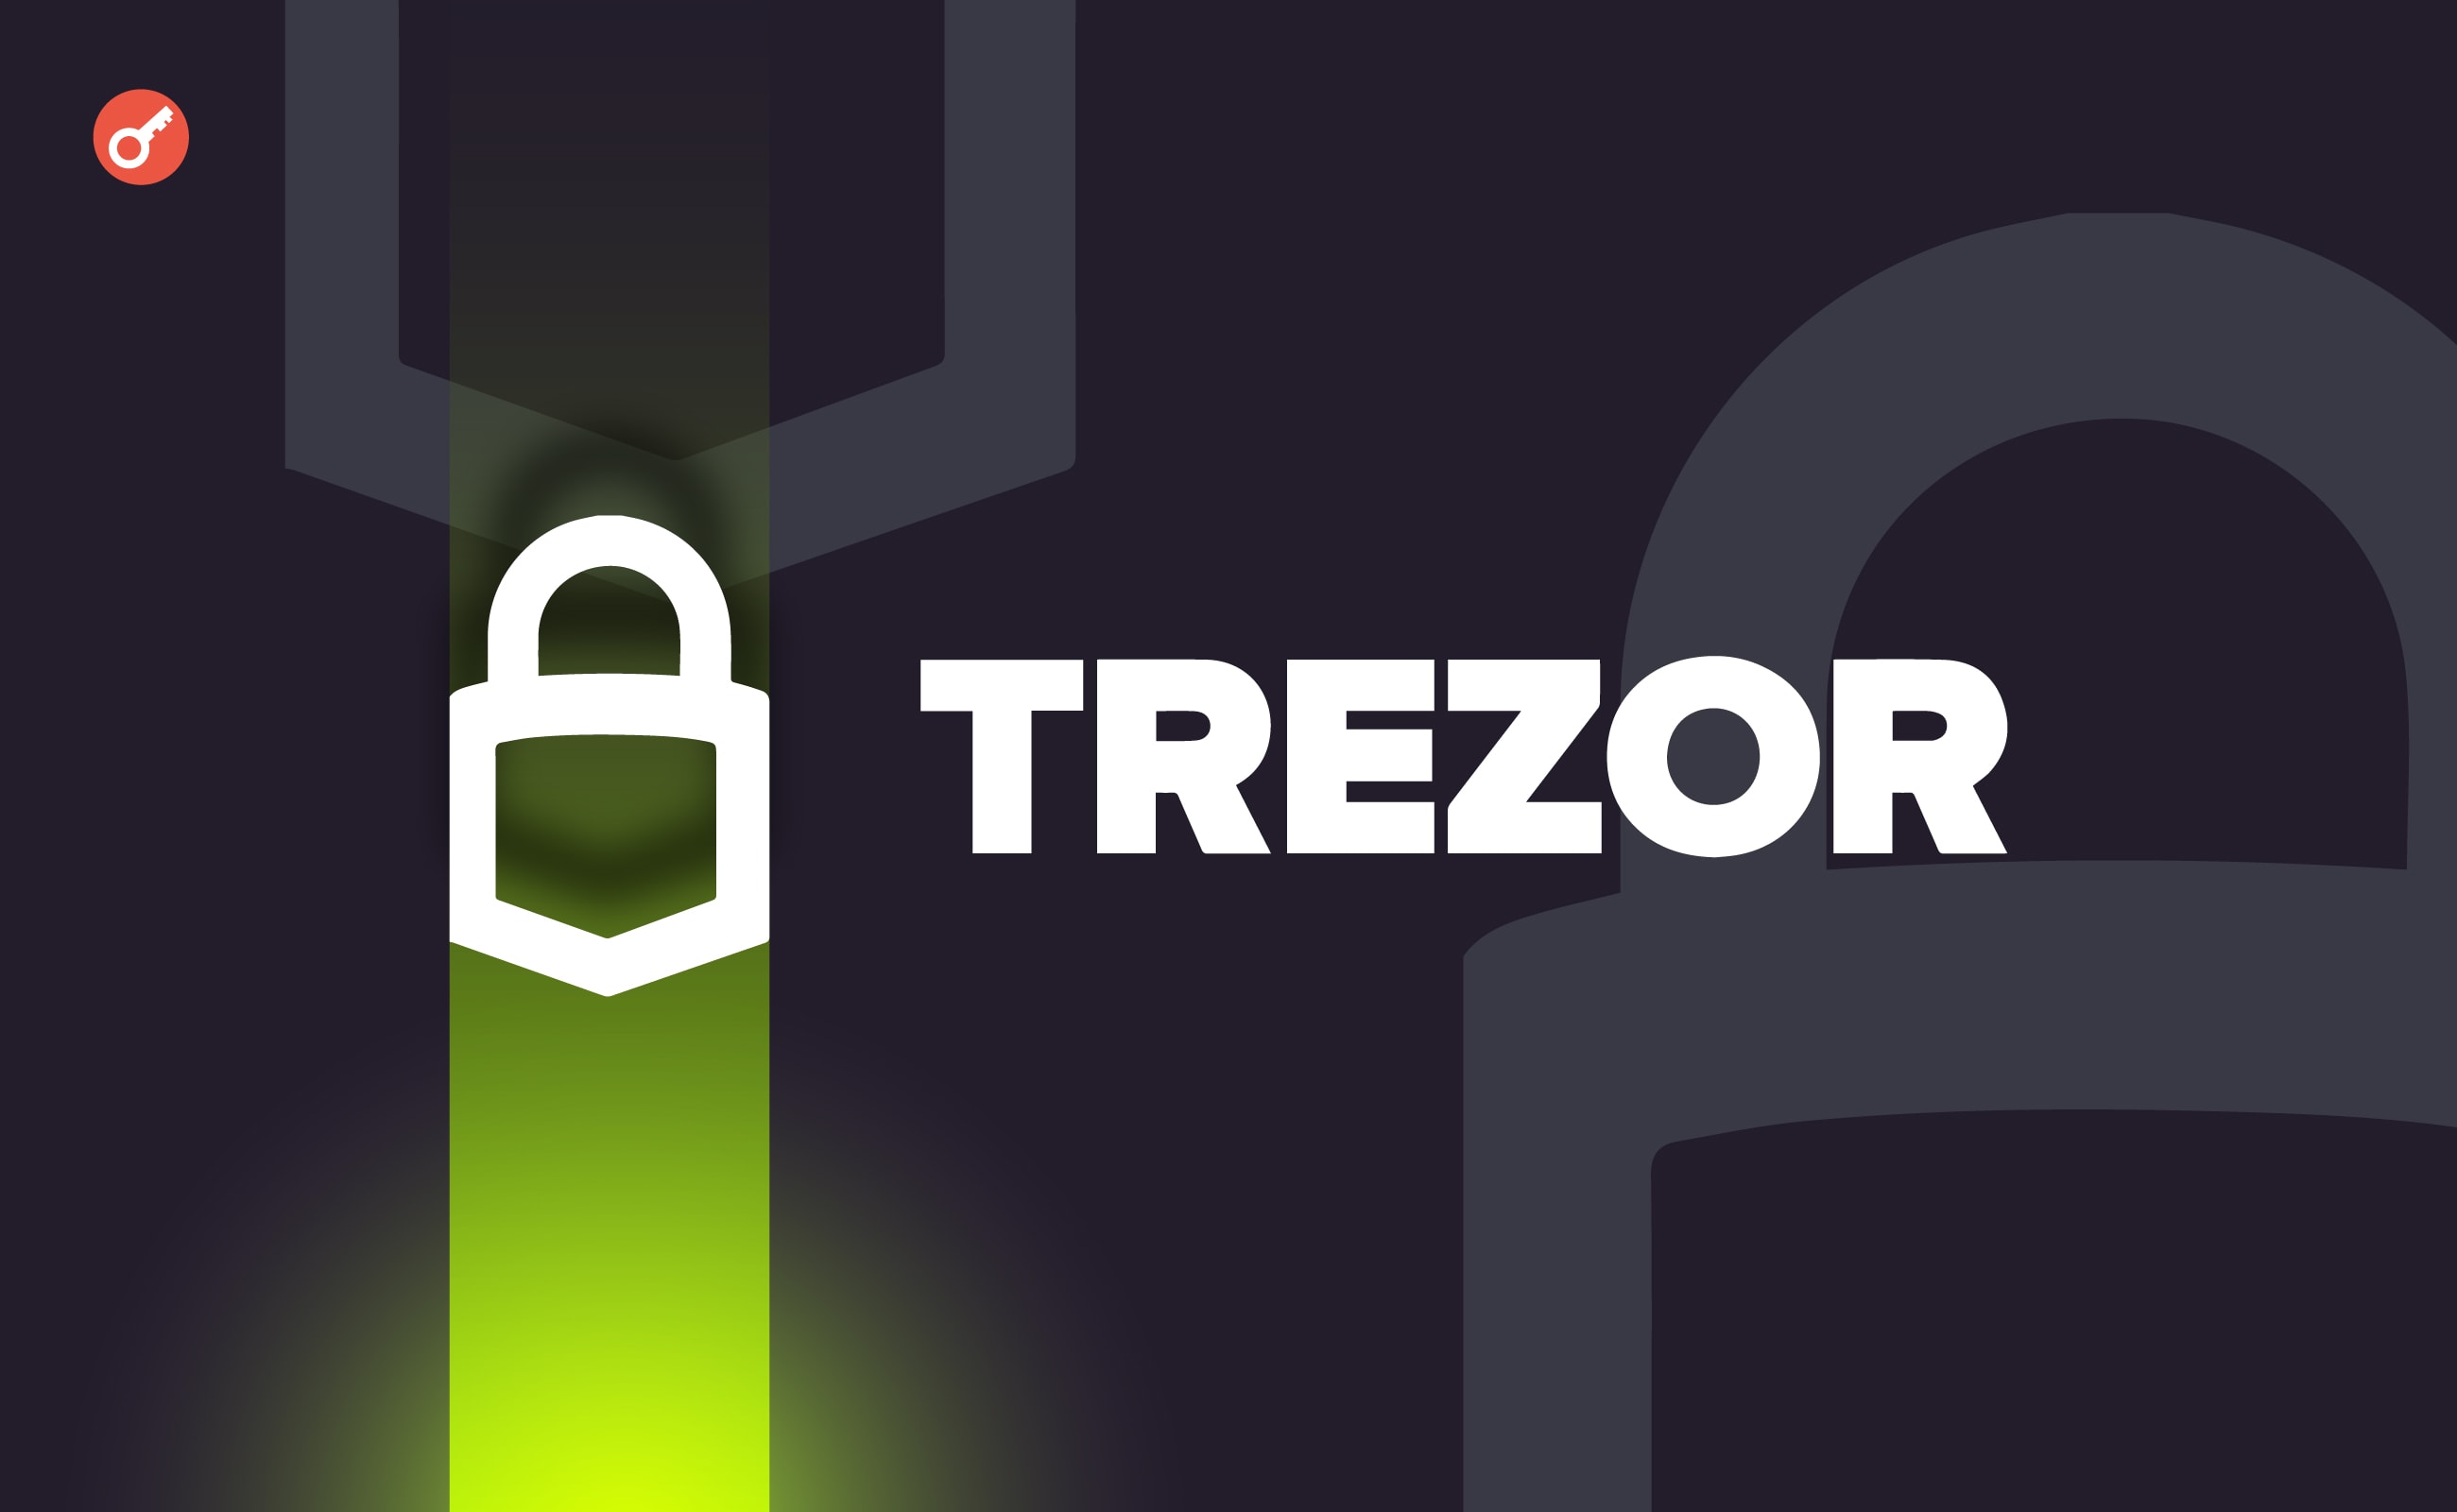 Trezor представила кошелек с поддержкой более 7000 криптовалют. Заглавный коллаж новости.